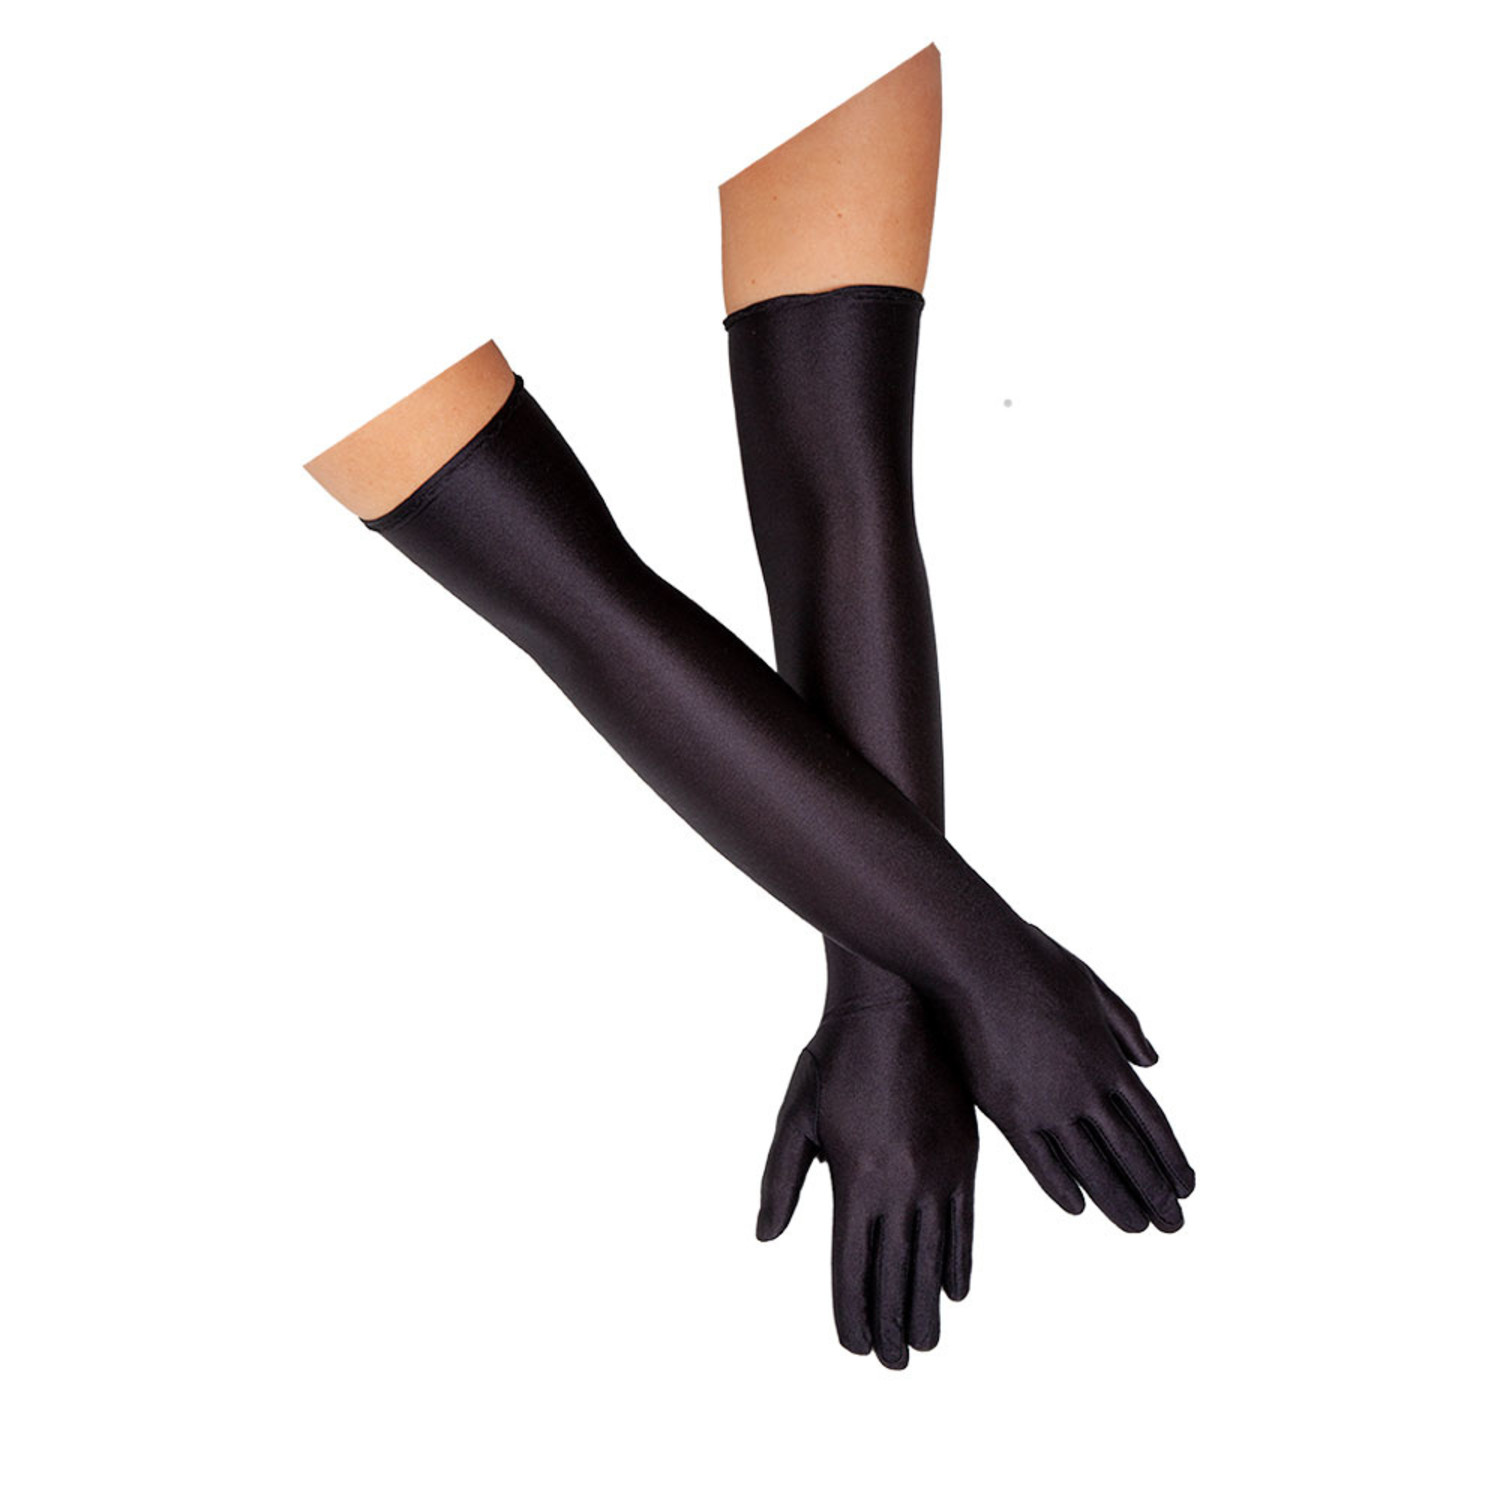 Identificeren laten we het doen onthouden Mooie lange zwarte satijnen handschoenen - e-Carnavalskleding